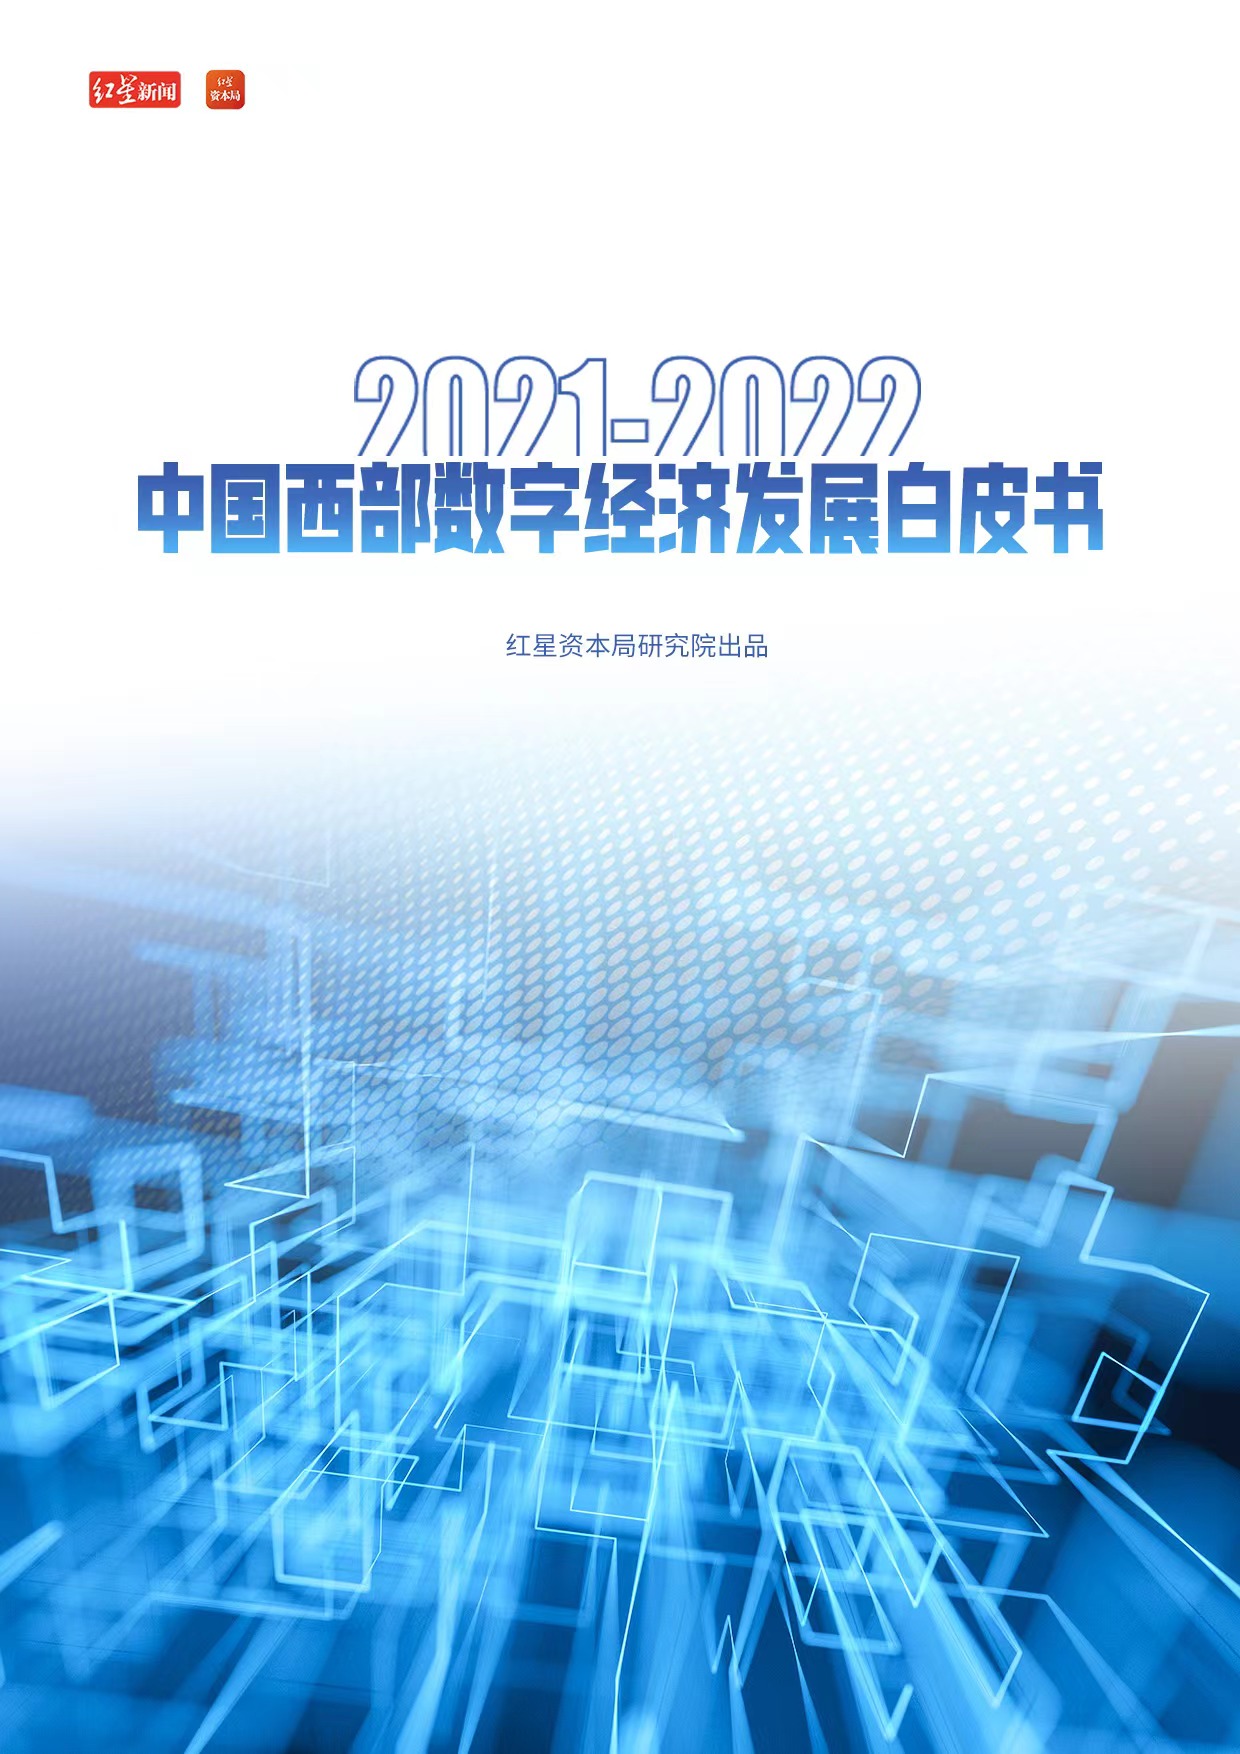 《2021中国数字企业白皮书——四年（2018-2021）对标篇》 - 锦囊专家 - 数字经济智库平台